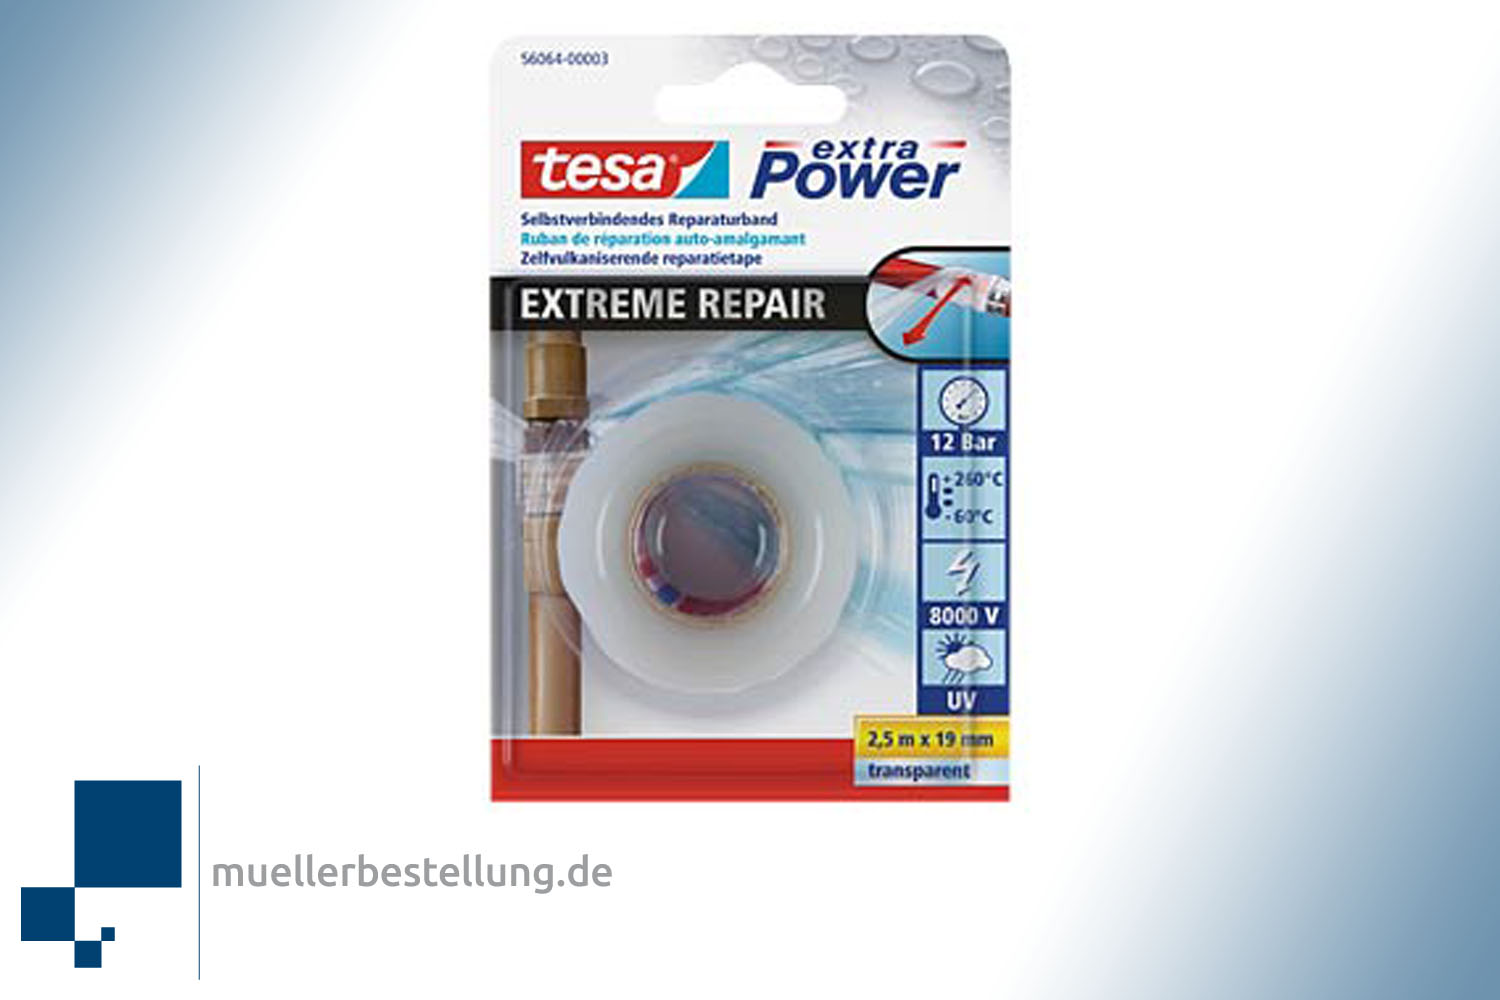 TESA 56064 TR Ремонтная лента tesa® extra Power Extreme Repair, прозрачная